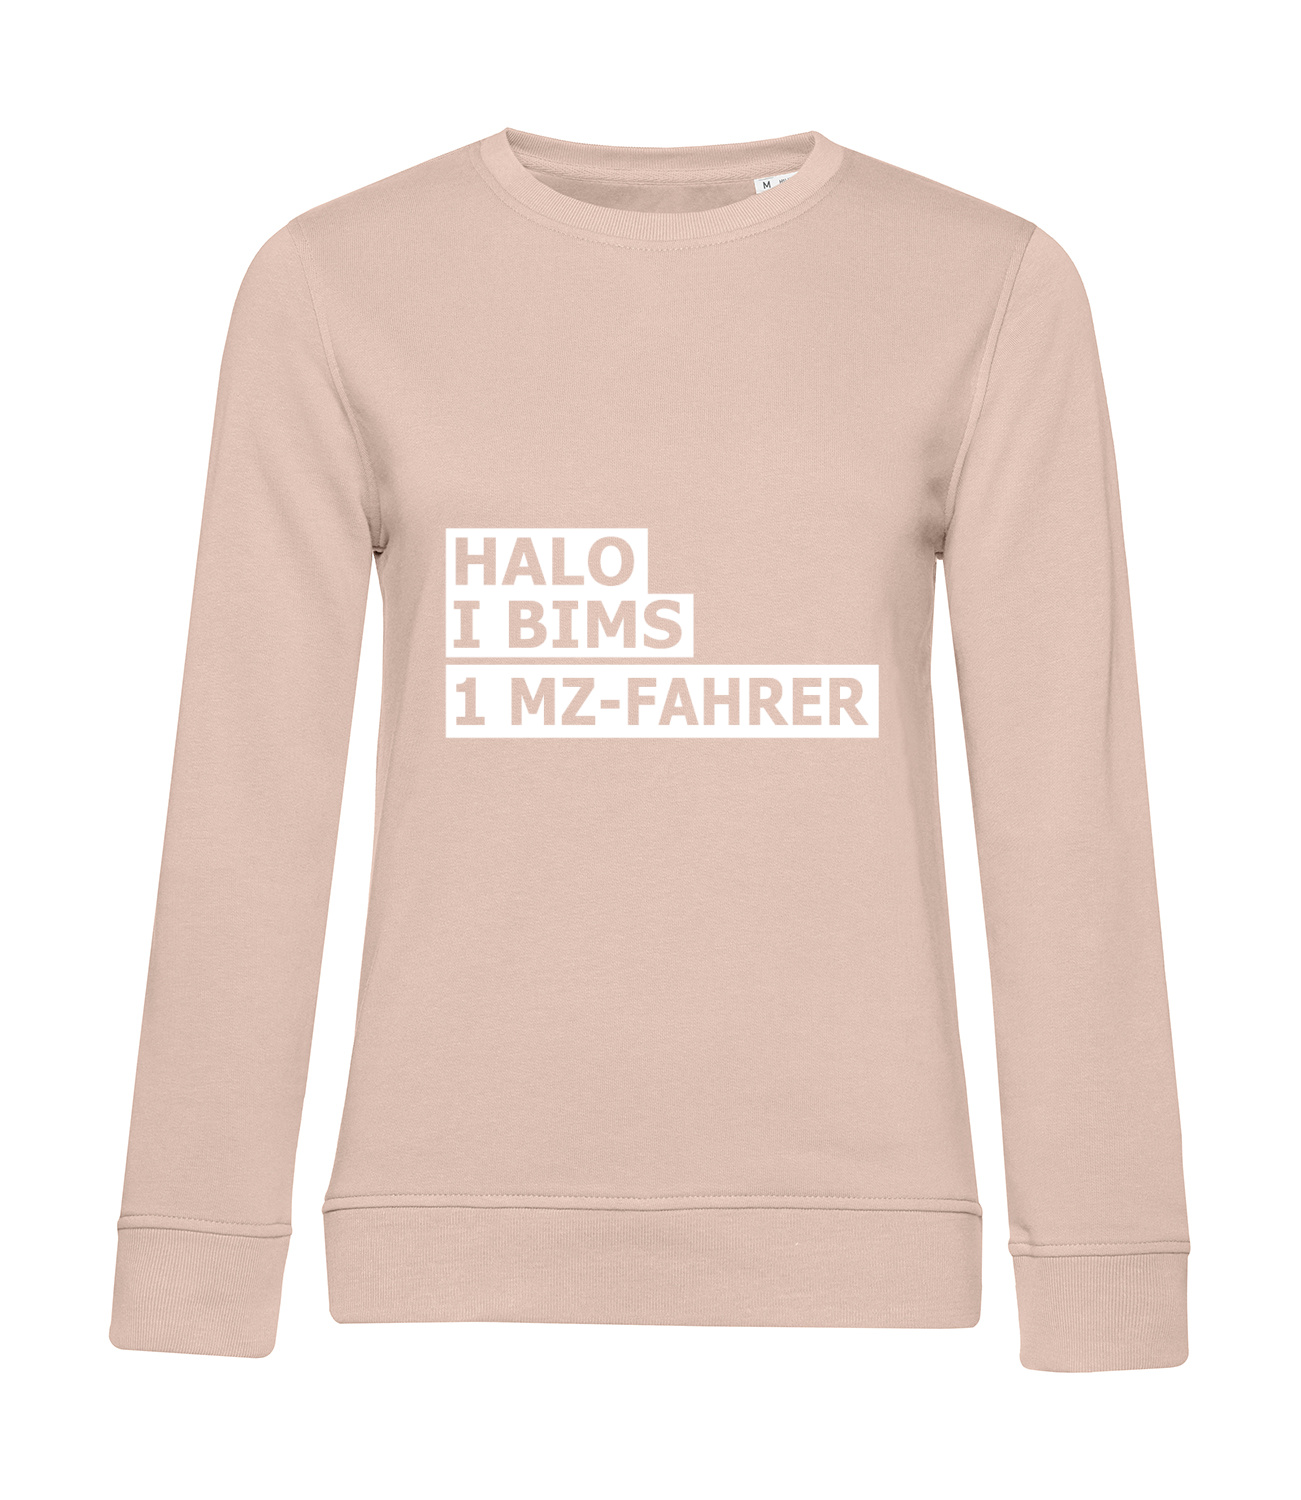 Nachhaltiges Sweatshirt Damen 2Takter - Halo I bims 1 MZ-Fahrer